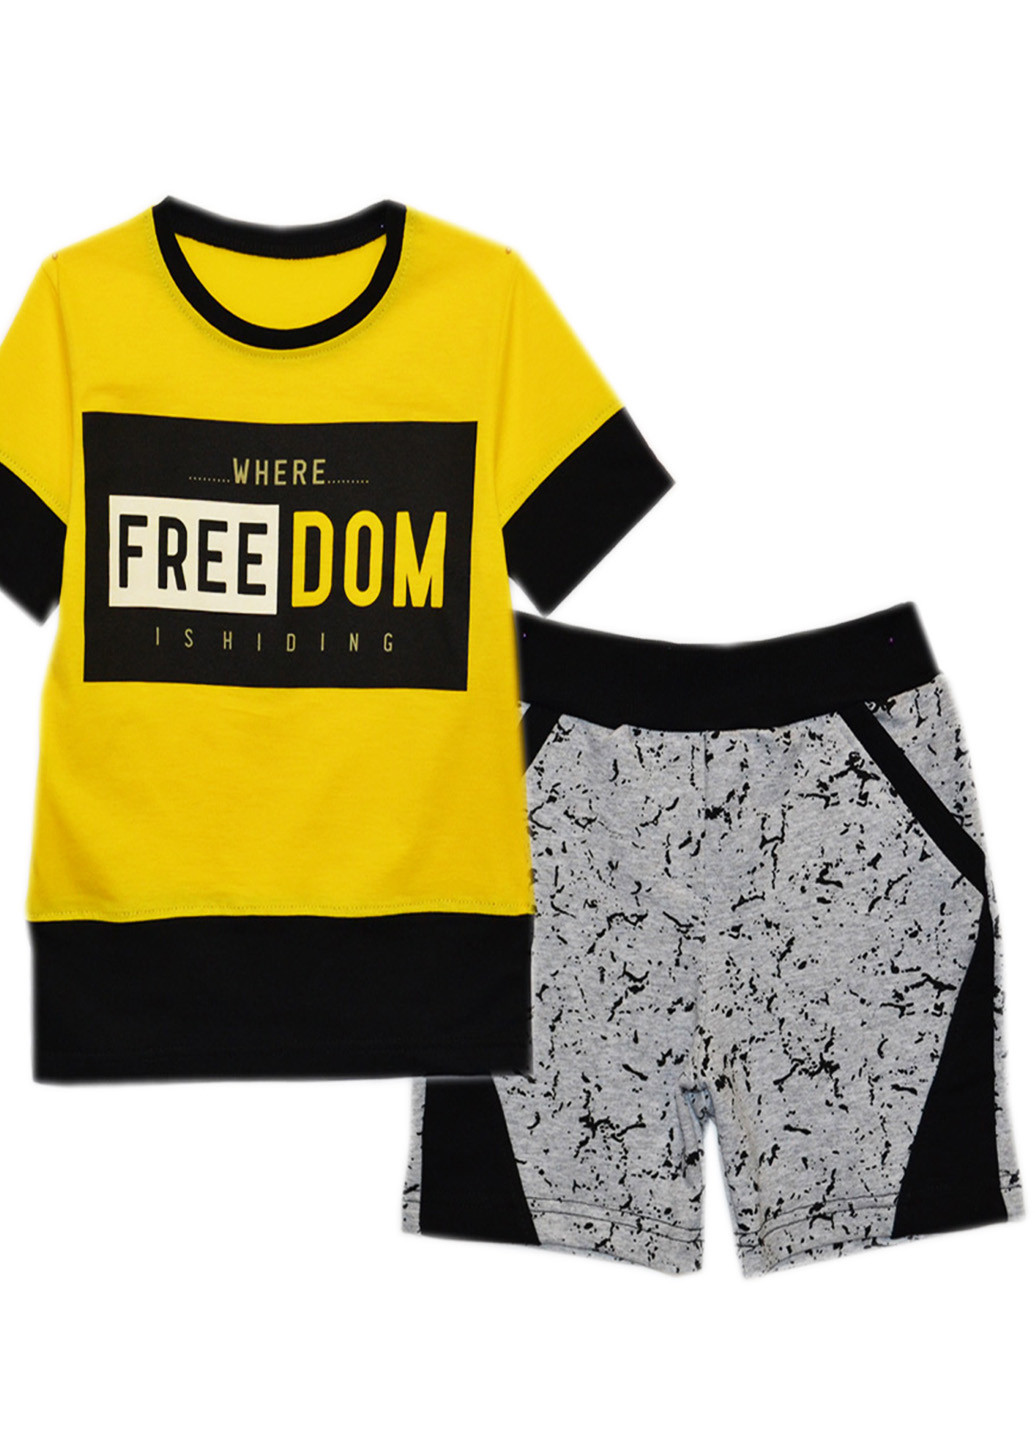 Желтый летний комплект для мальчика шорты+футболка. Витуся